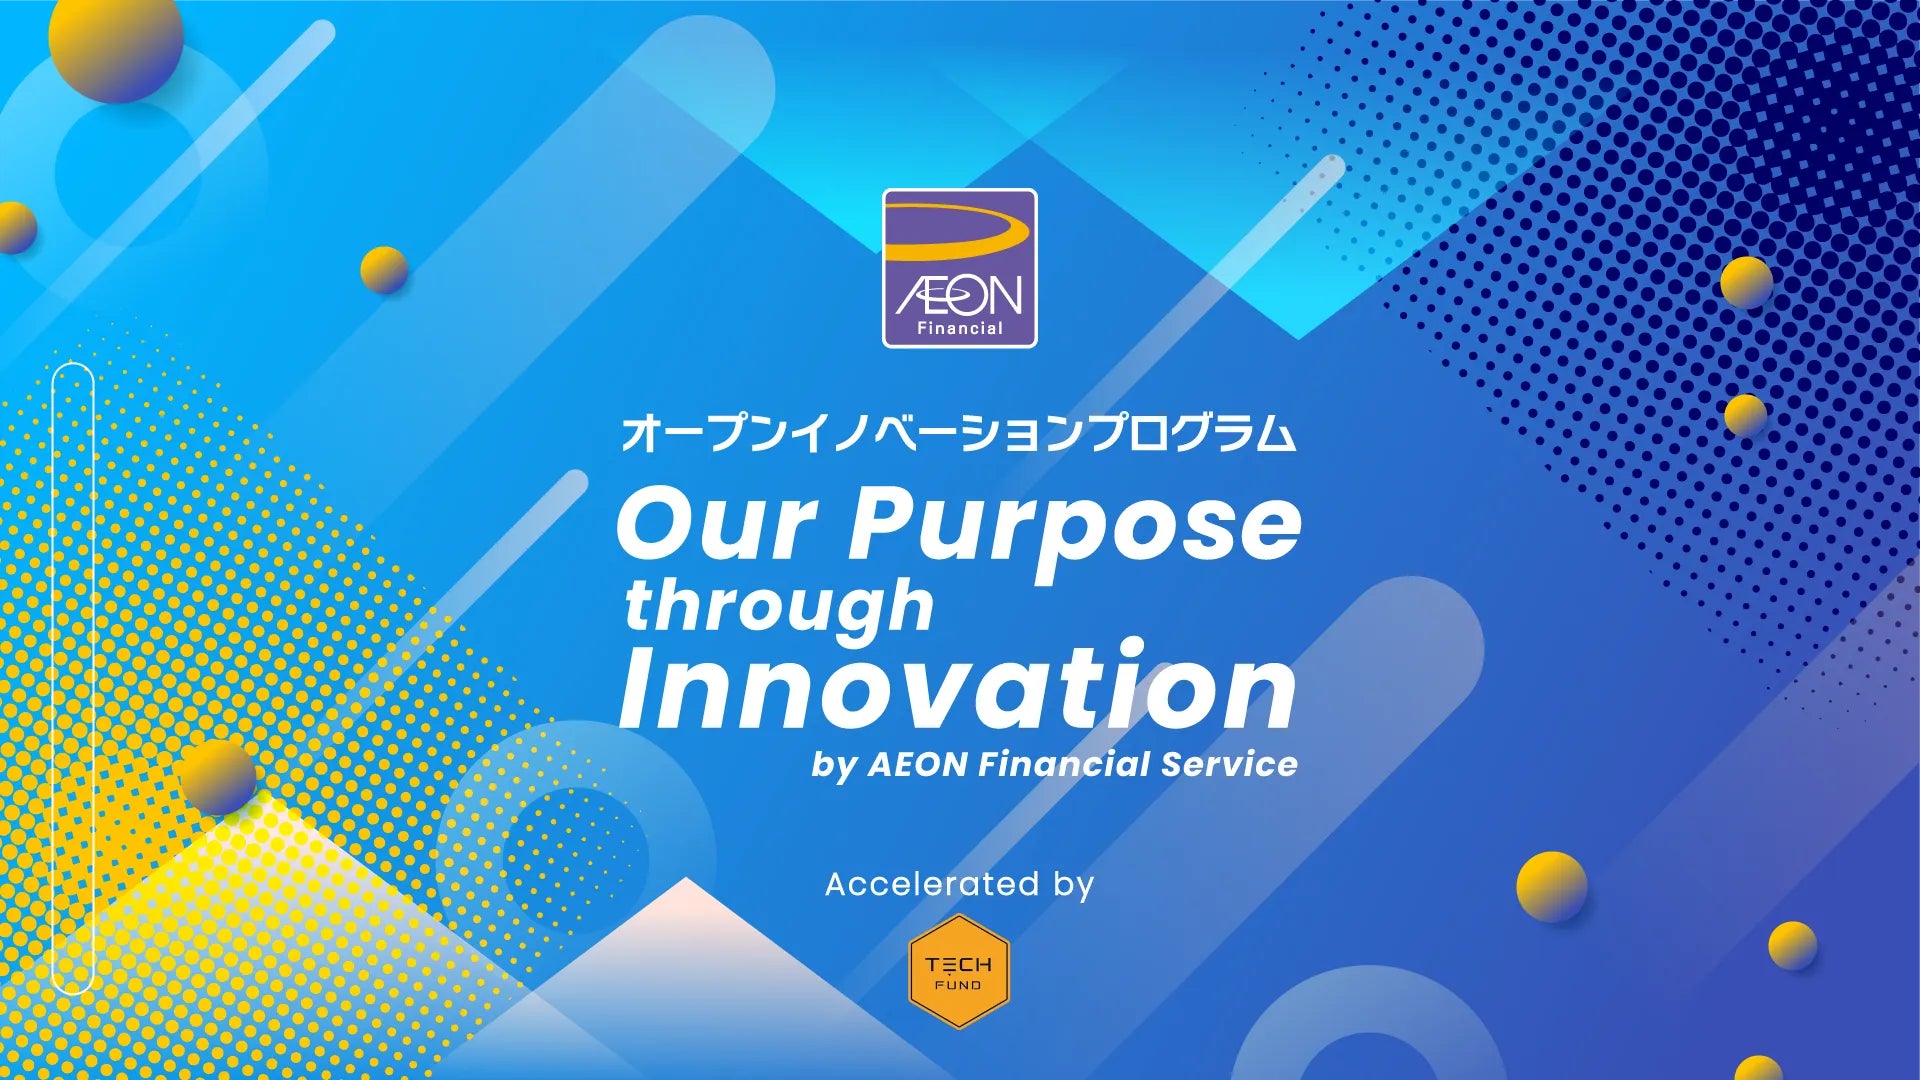 TECHFUND、イオンフィナンシャルサービス社とオープンイノベーションプログラム「Our Purpose through Innovation」を開催。アクセラレーターとして新規事業開発をサポート